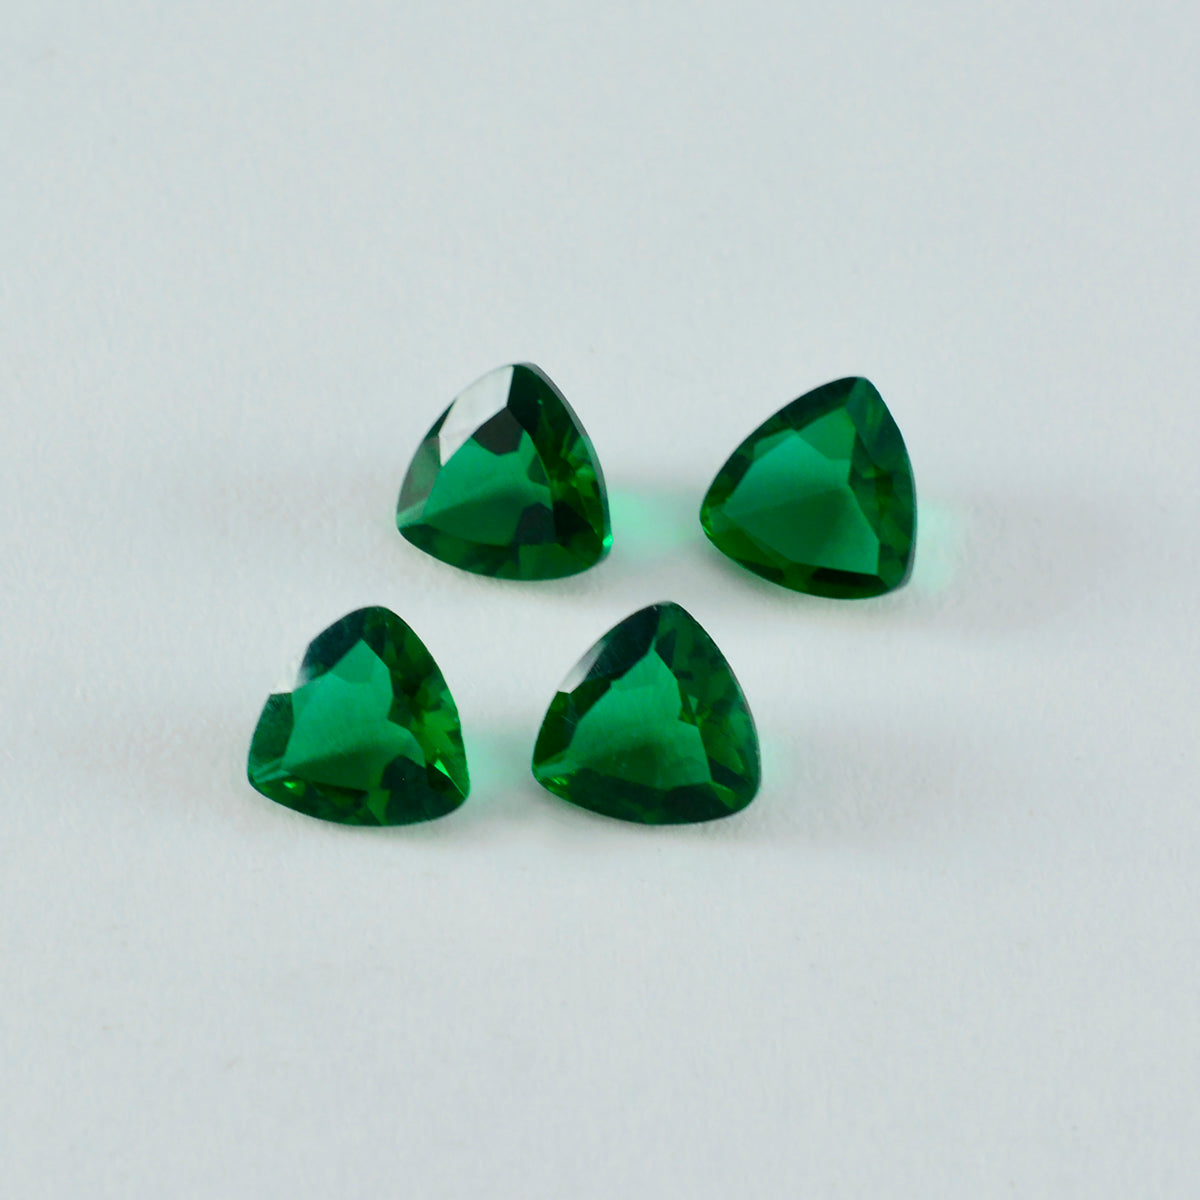 riyogems 1 шт., зеленый изумруд, граненый cz, 12x12 мм, форма триллиона, качество AAA, драгоценные камни